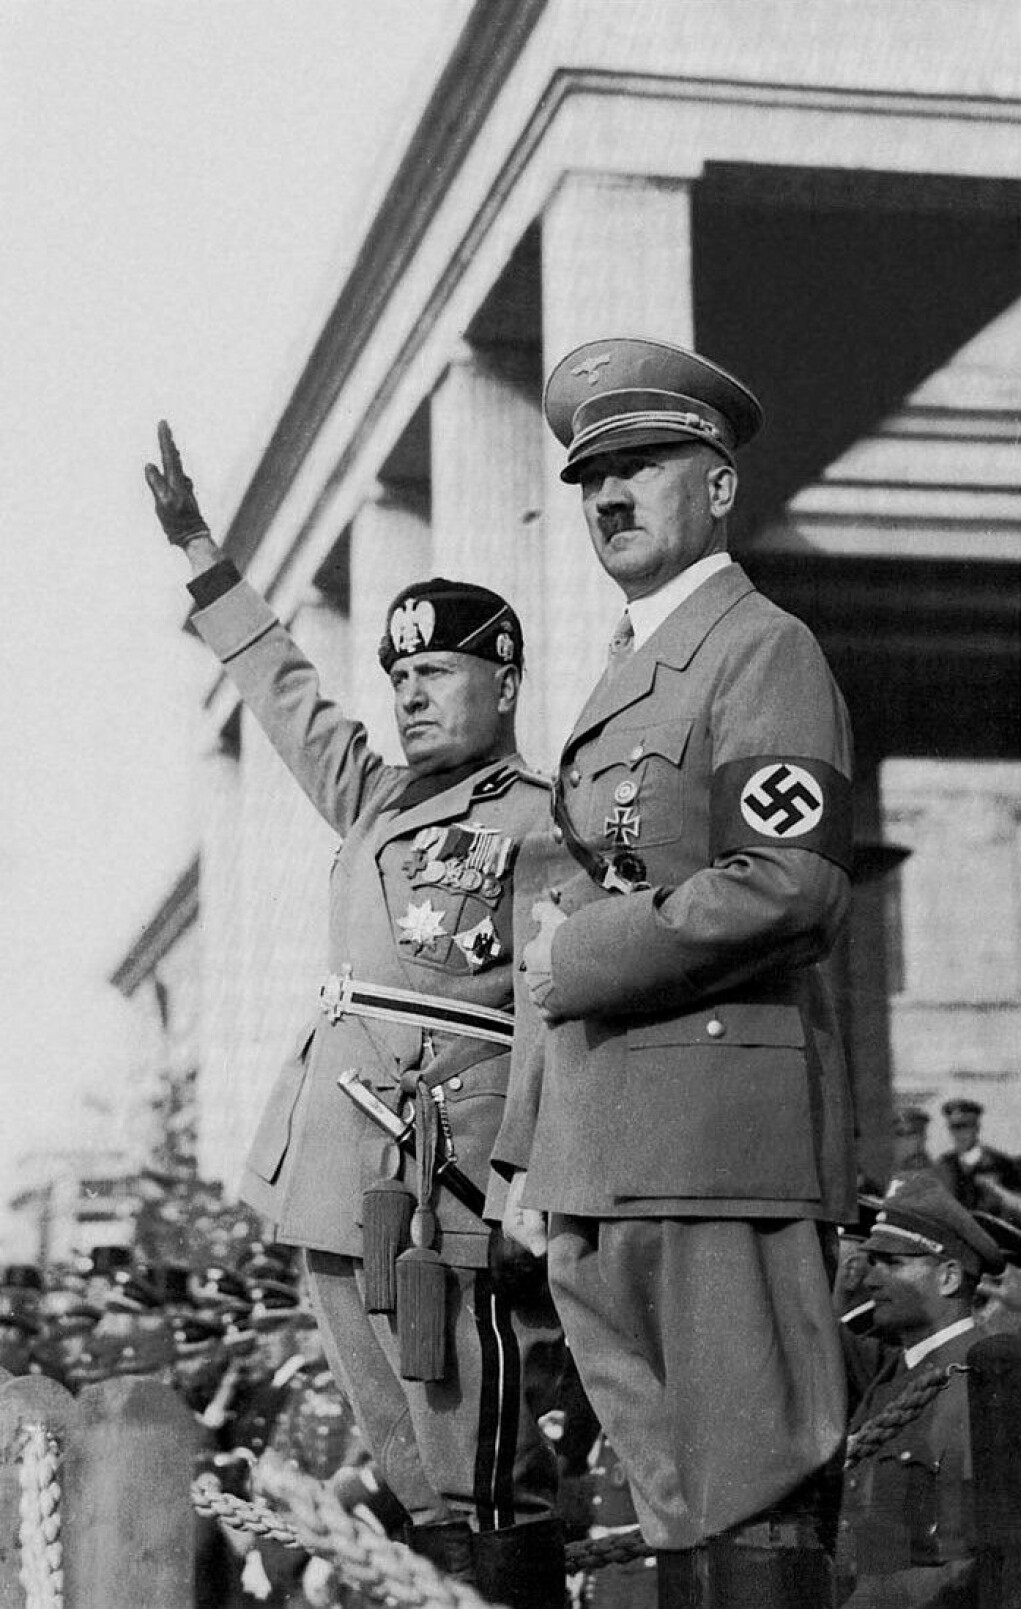 Le dittature non arrivano dall'oggi al domani.  L'italiano Benito Mussolini (a sinistra) e il tedesco Adolf Hitler salirono al potere in modo democratico, poi trasformarono l'Italia e la Germania in dittature.